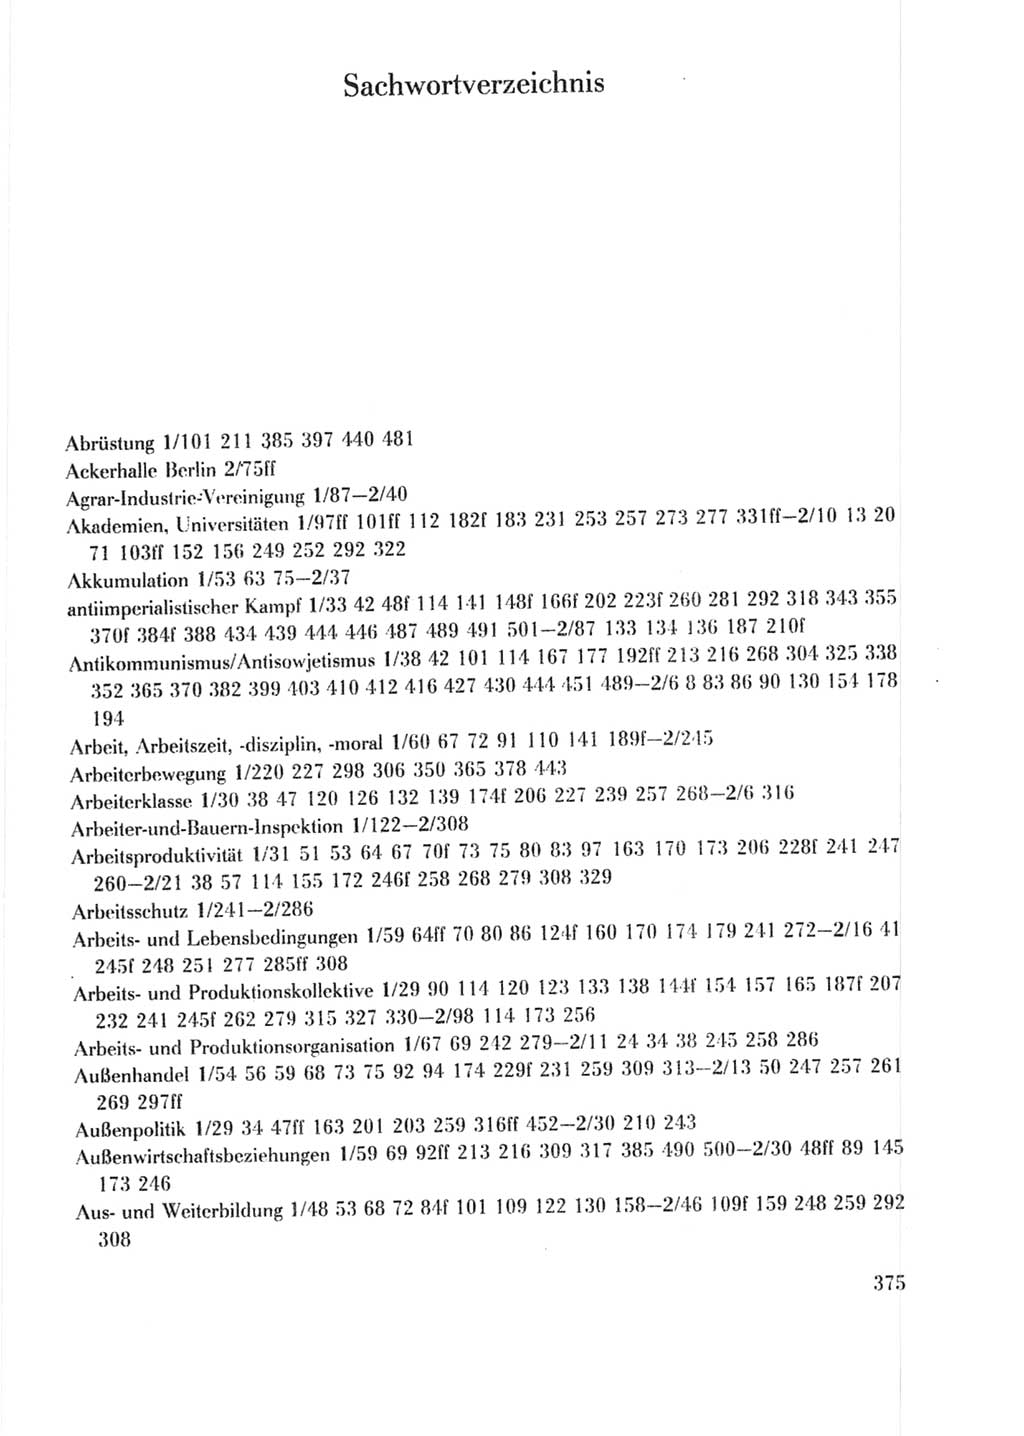 Protokoll der Verhandlungen des Ⅹ. Parteitages der Sozialistischen Einheitspartei Deutschlands (SED) [Deutsche Demokratische Republik (DDR)] 1981, Band 2, Seite 375 (Prot. Verh. Ⅹ. PT SED DDR 1981, Bd. 2, S. 375)